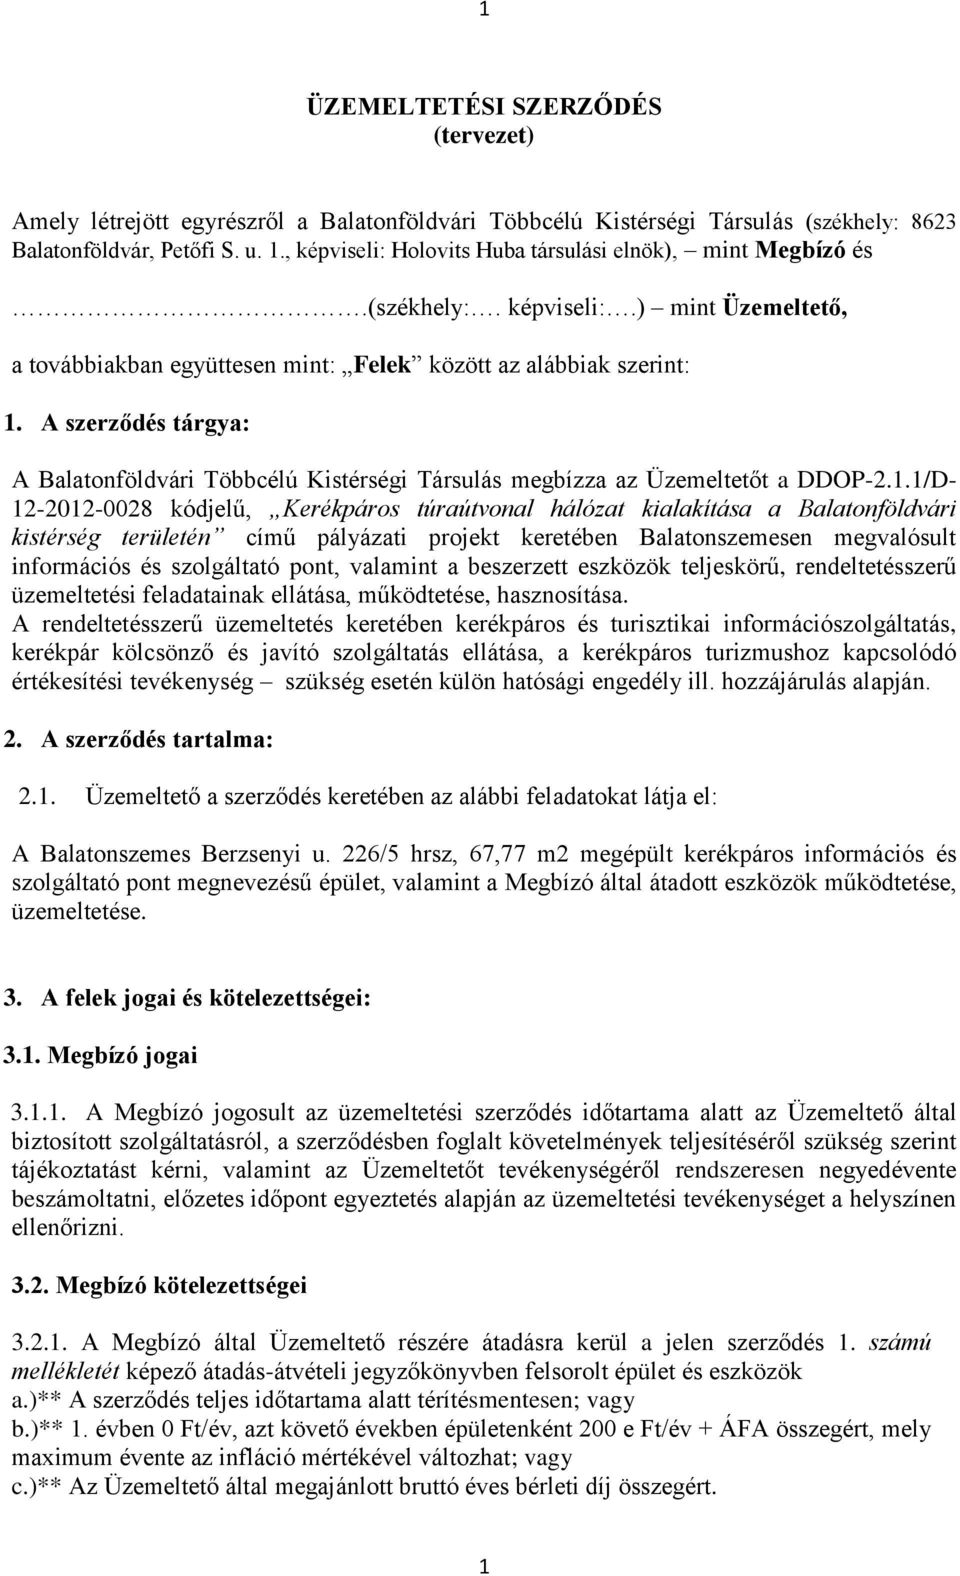 A szerződés tárgya: A Balatonföldvári Többcélú Kistérségi Társulás megbízza az Üzemeltetőt a DDOP-2.1.